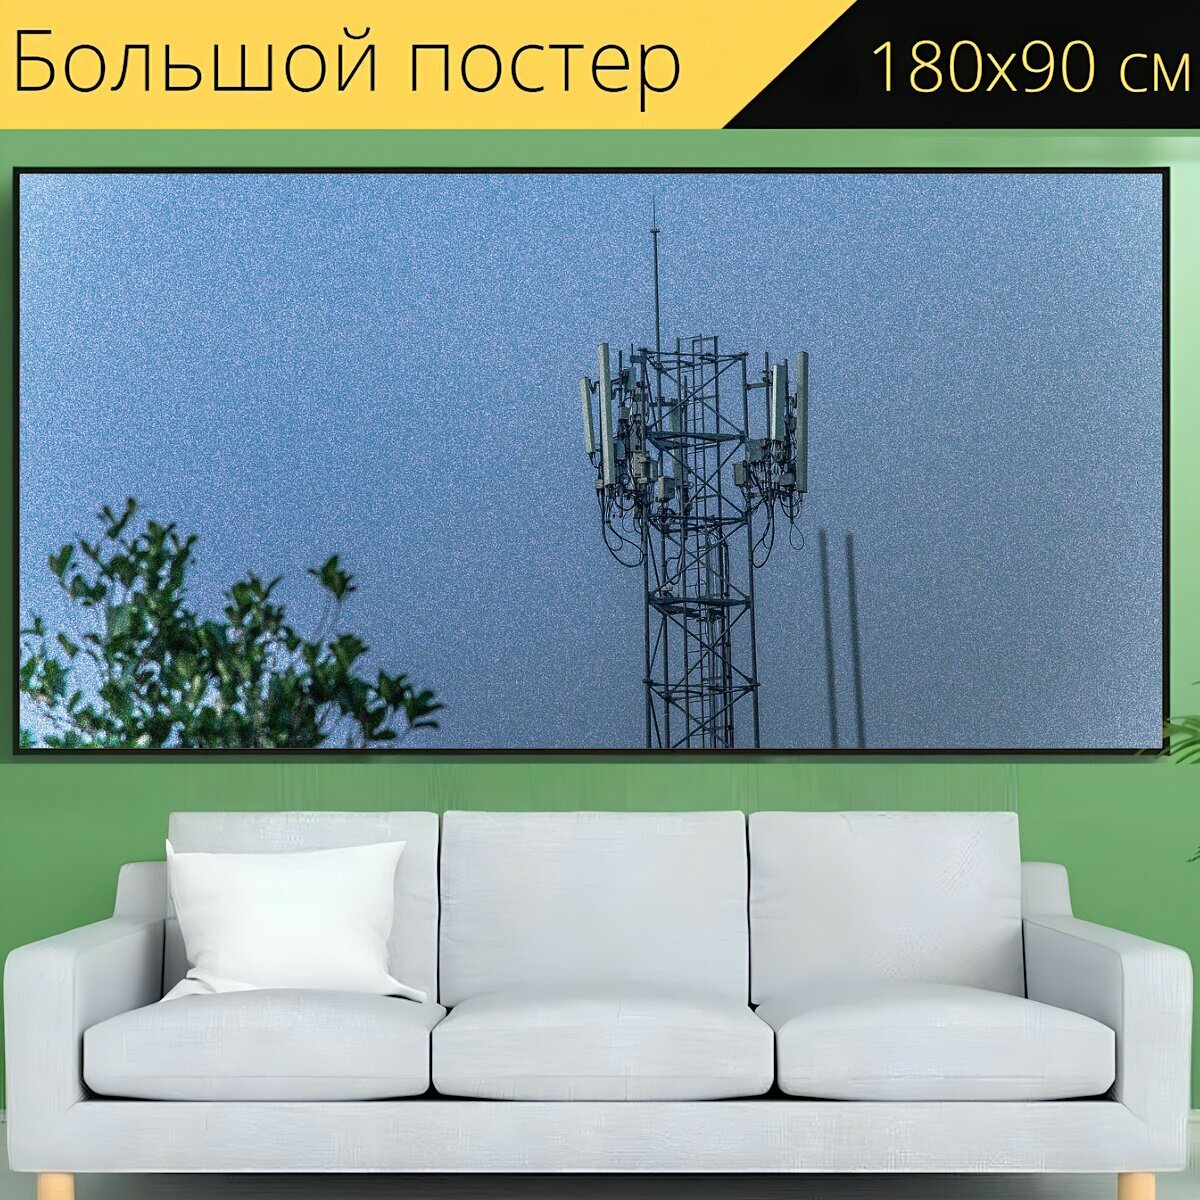 Большой постер "Телефонный сигнал полюс, телекоммуникации, антенна" 180 x 90 см. для интерьера